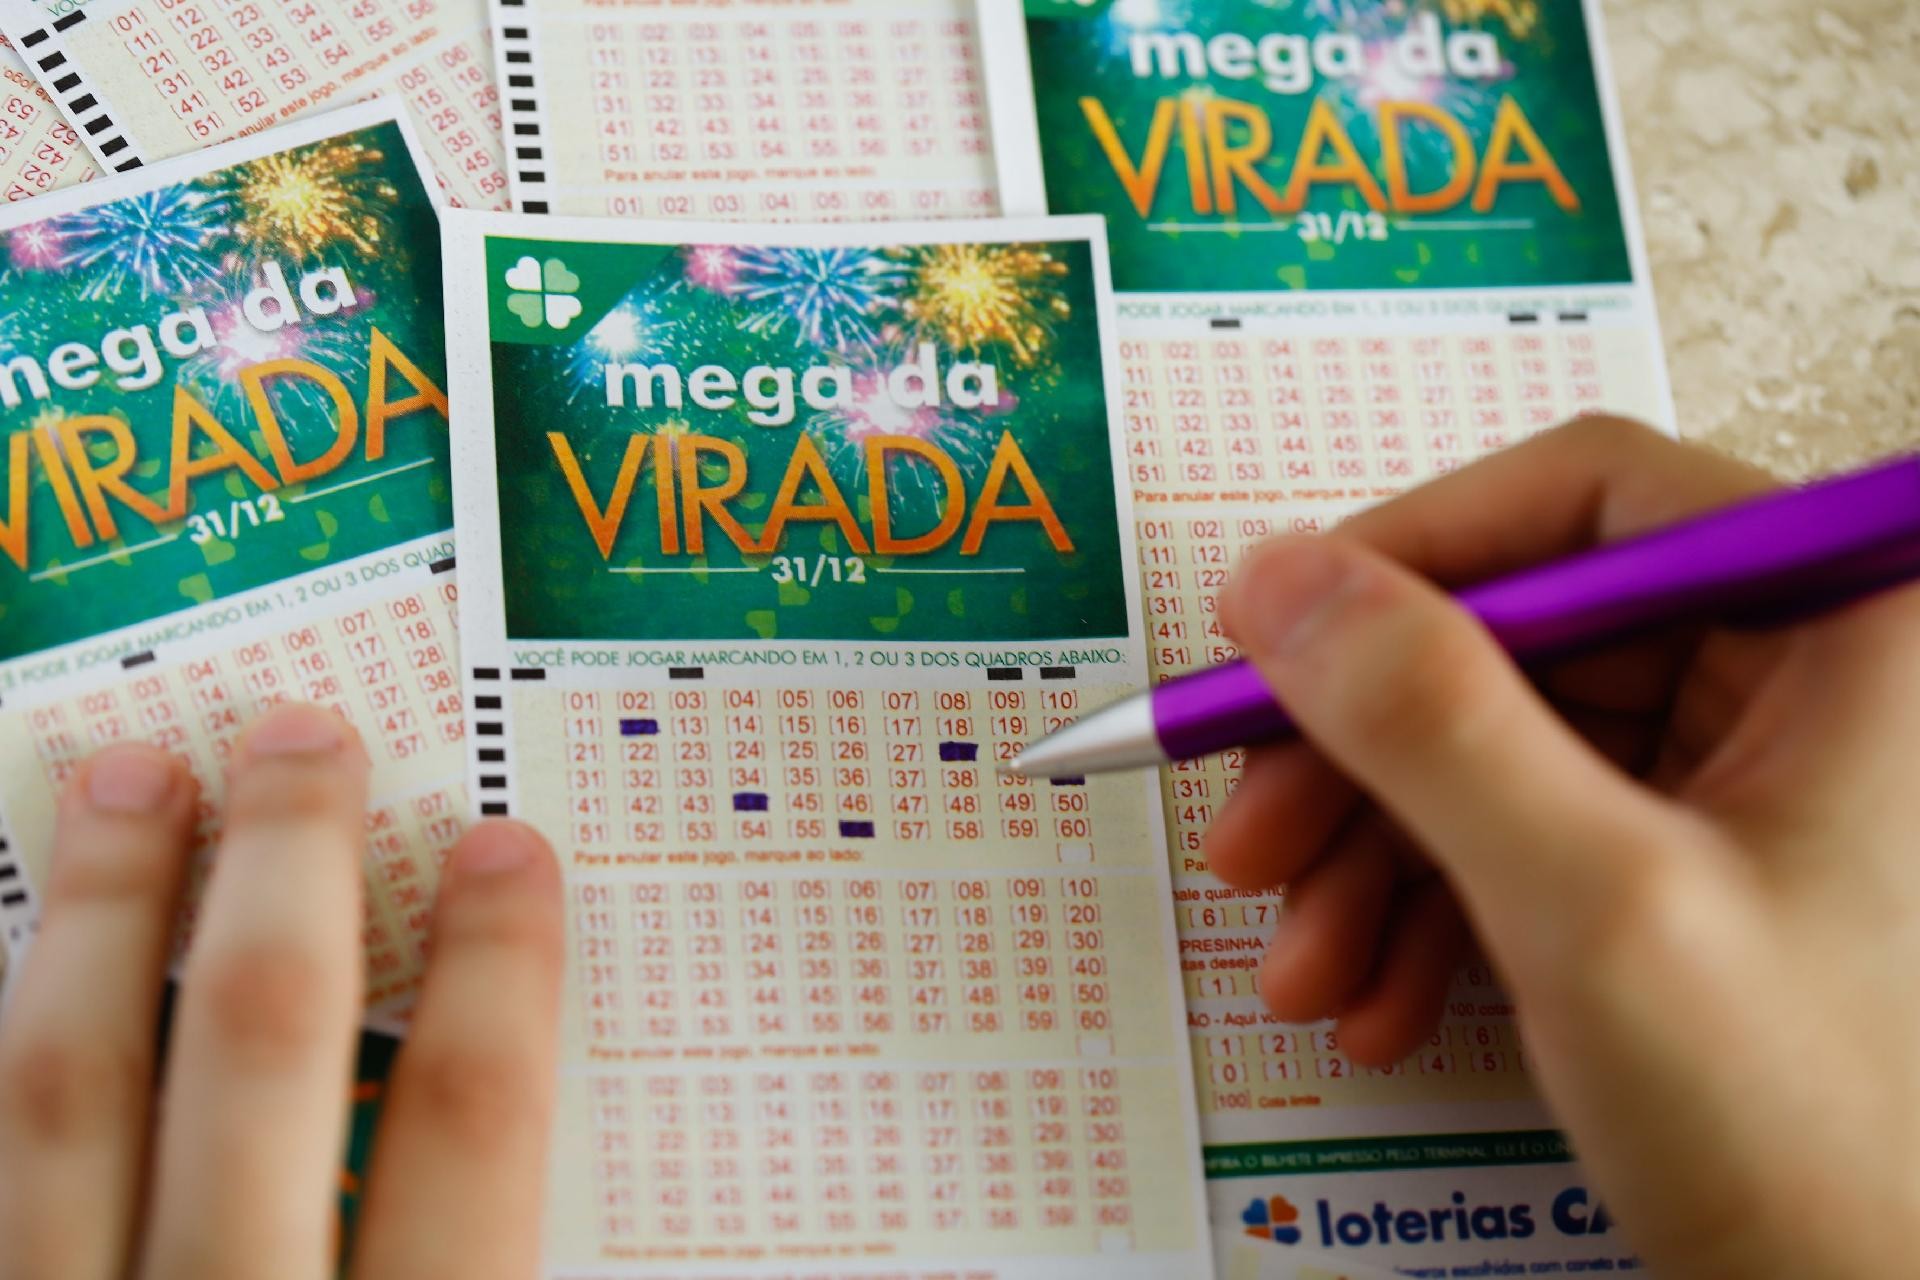 Aposte sem sair de casa! Caixa lança serviço online para loteria 